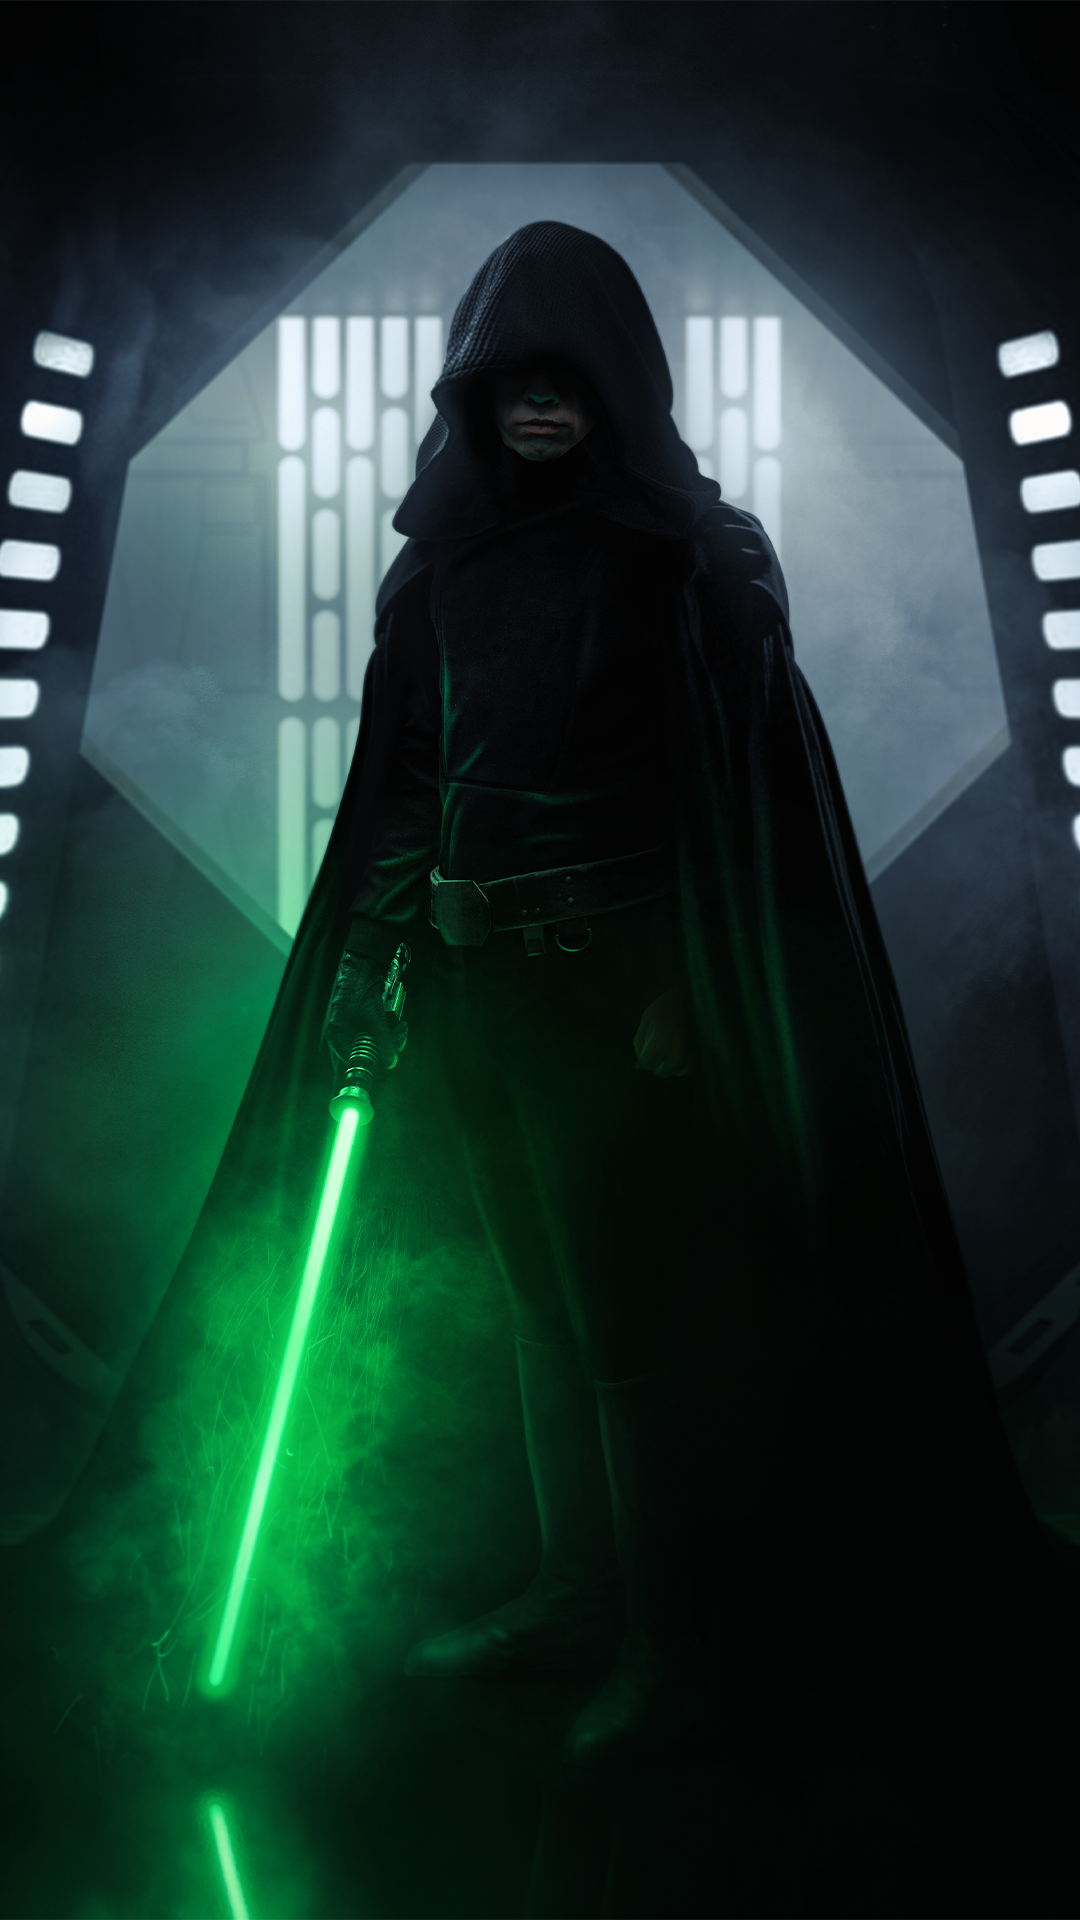 Luke Skywalker Wallpaper in 2021